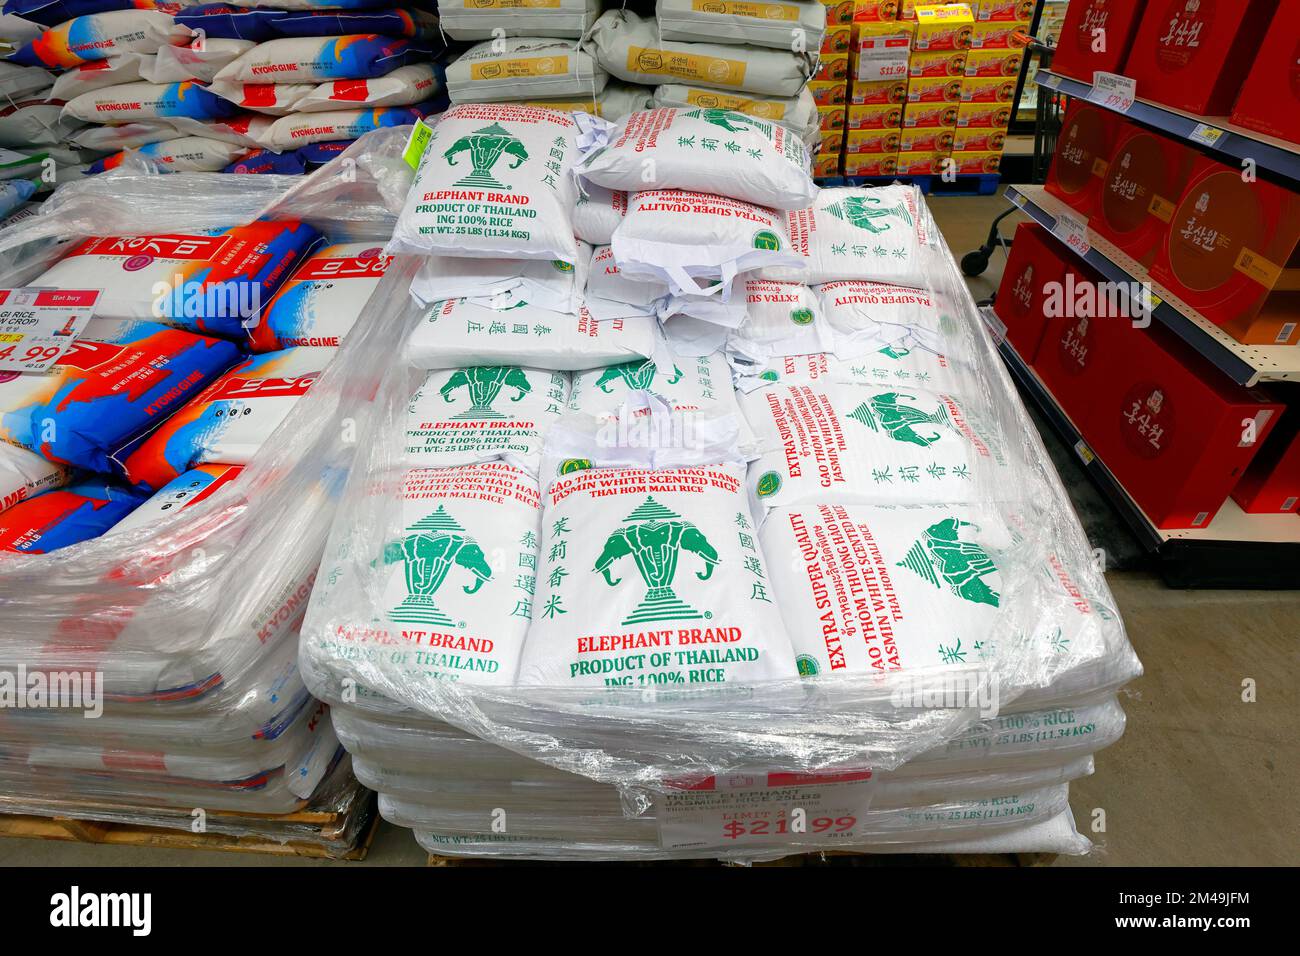 Sacchi di tre Elephant marchio Jasmine riso, Thai Hom Mali riso su un pallet in un negozio di alimentari asiatico. Foto Stock